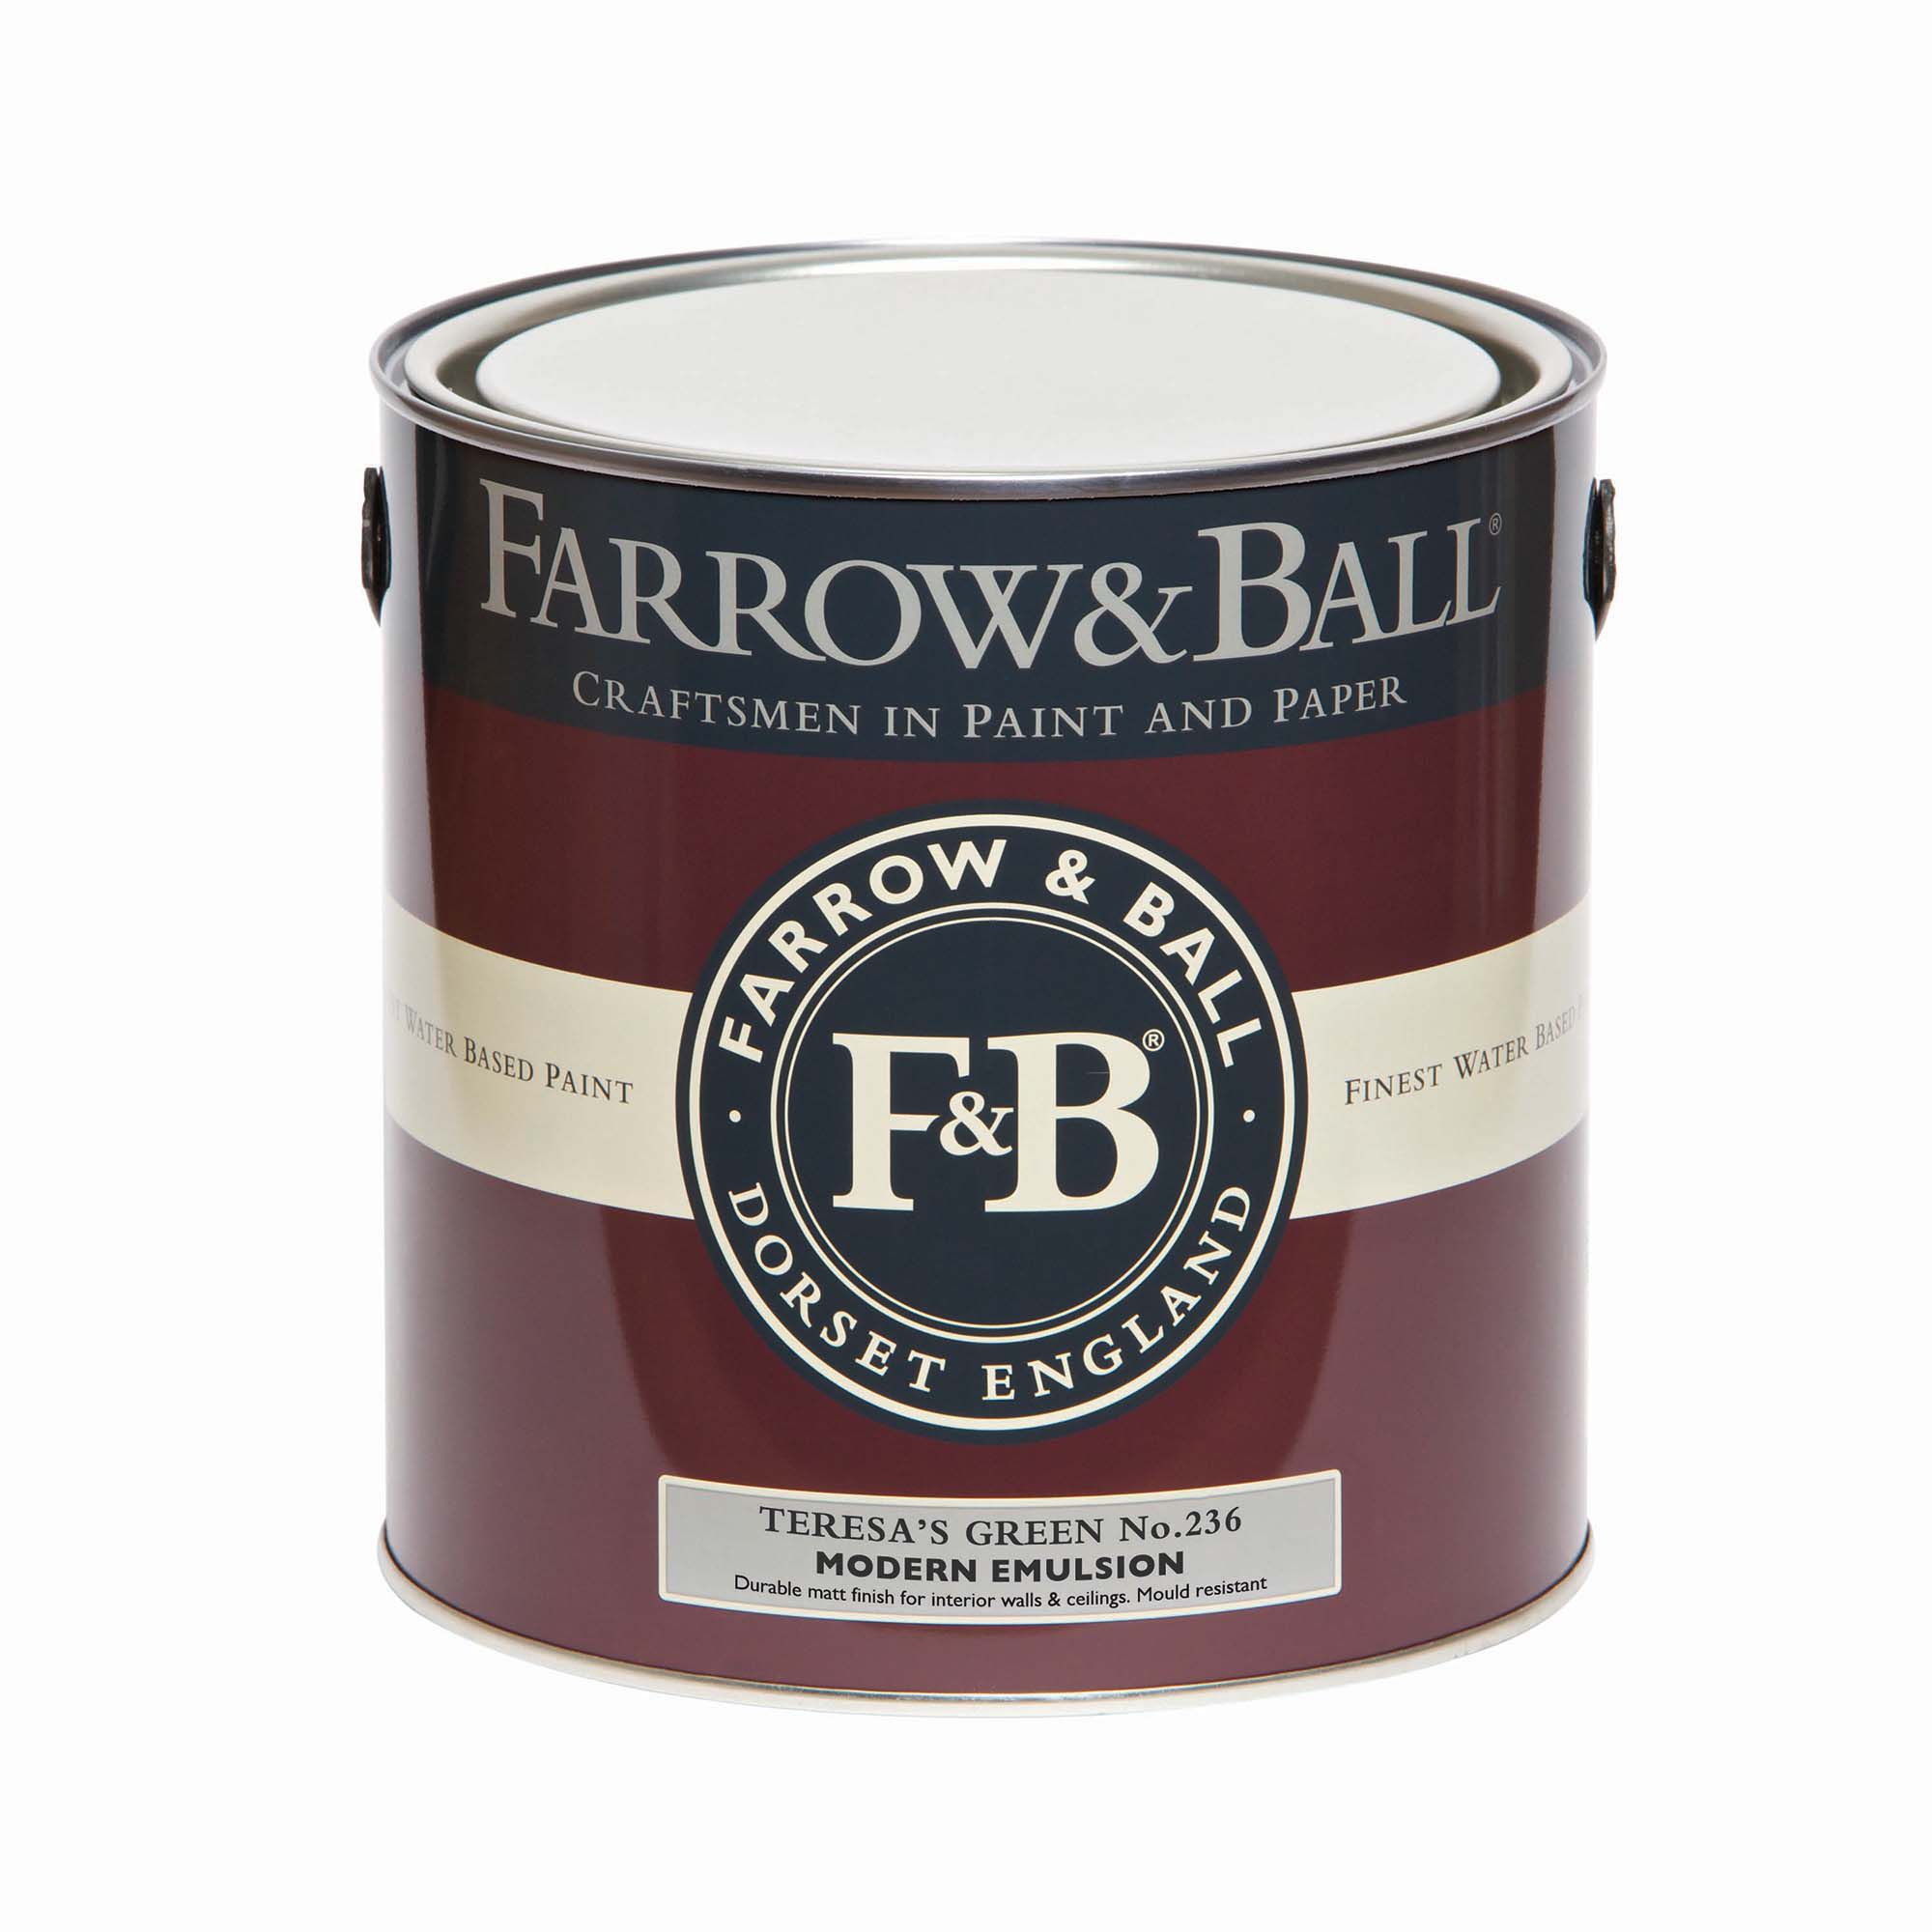 Farrow & Ball Modern Teresa Green No.236 Matt Emulsion paint, 2.5L